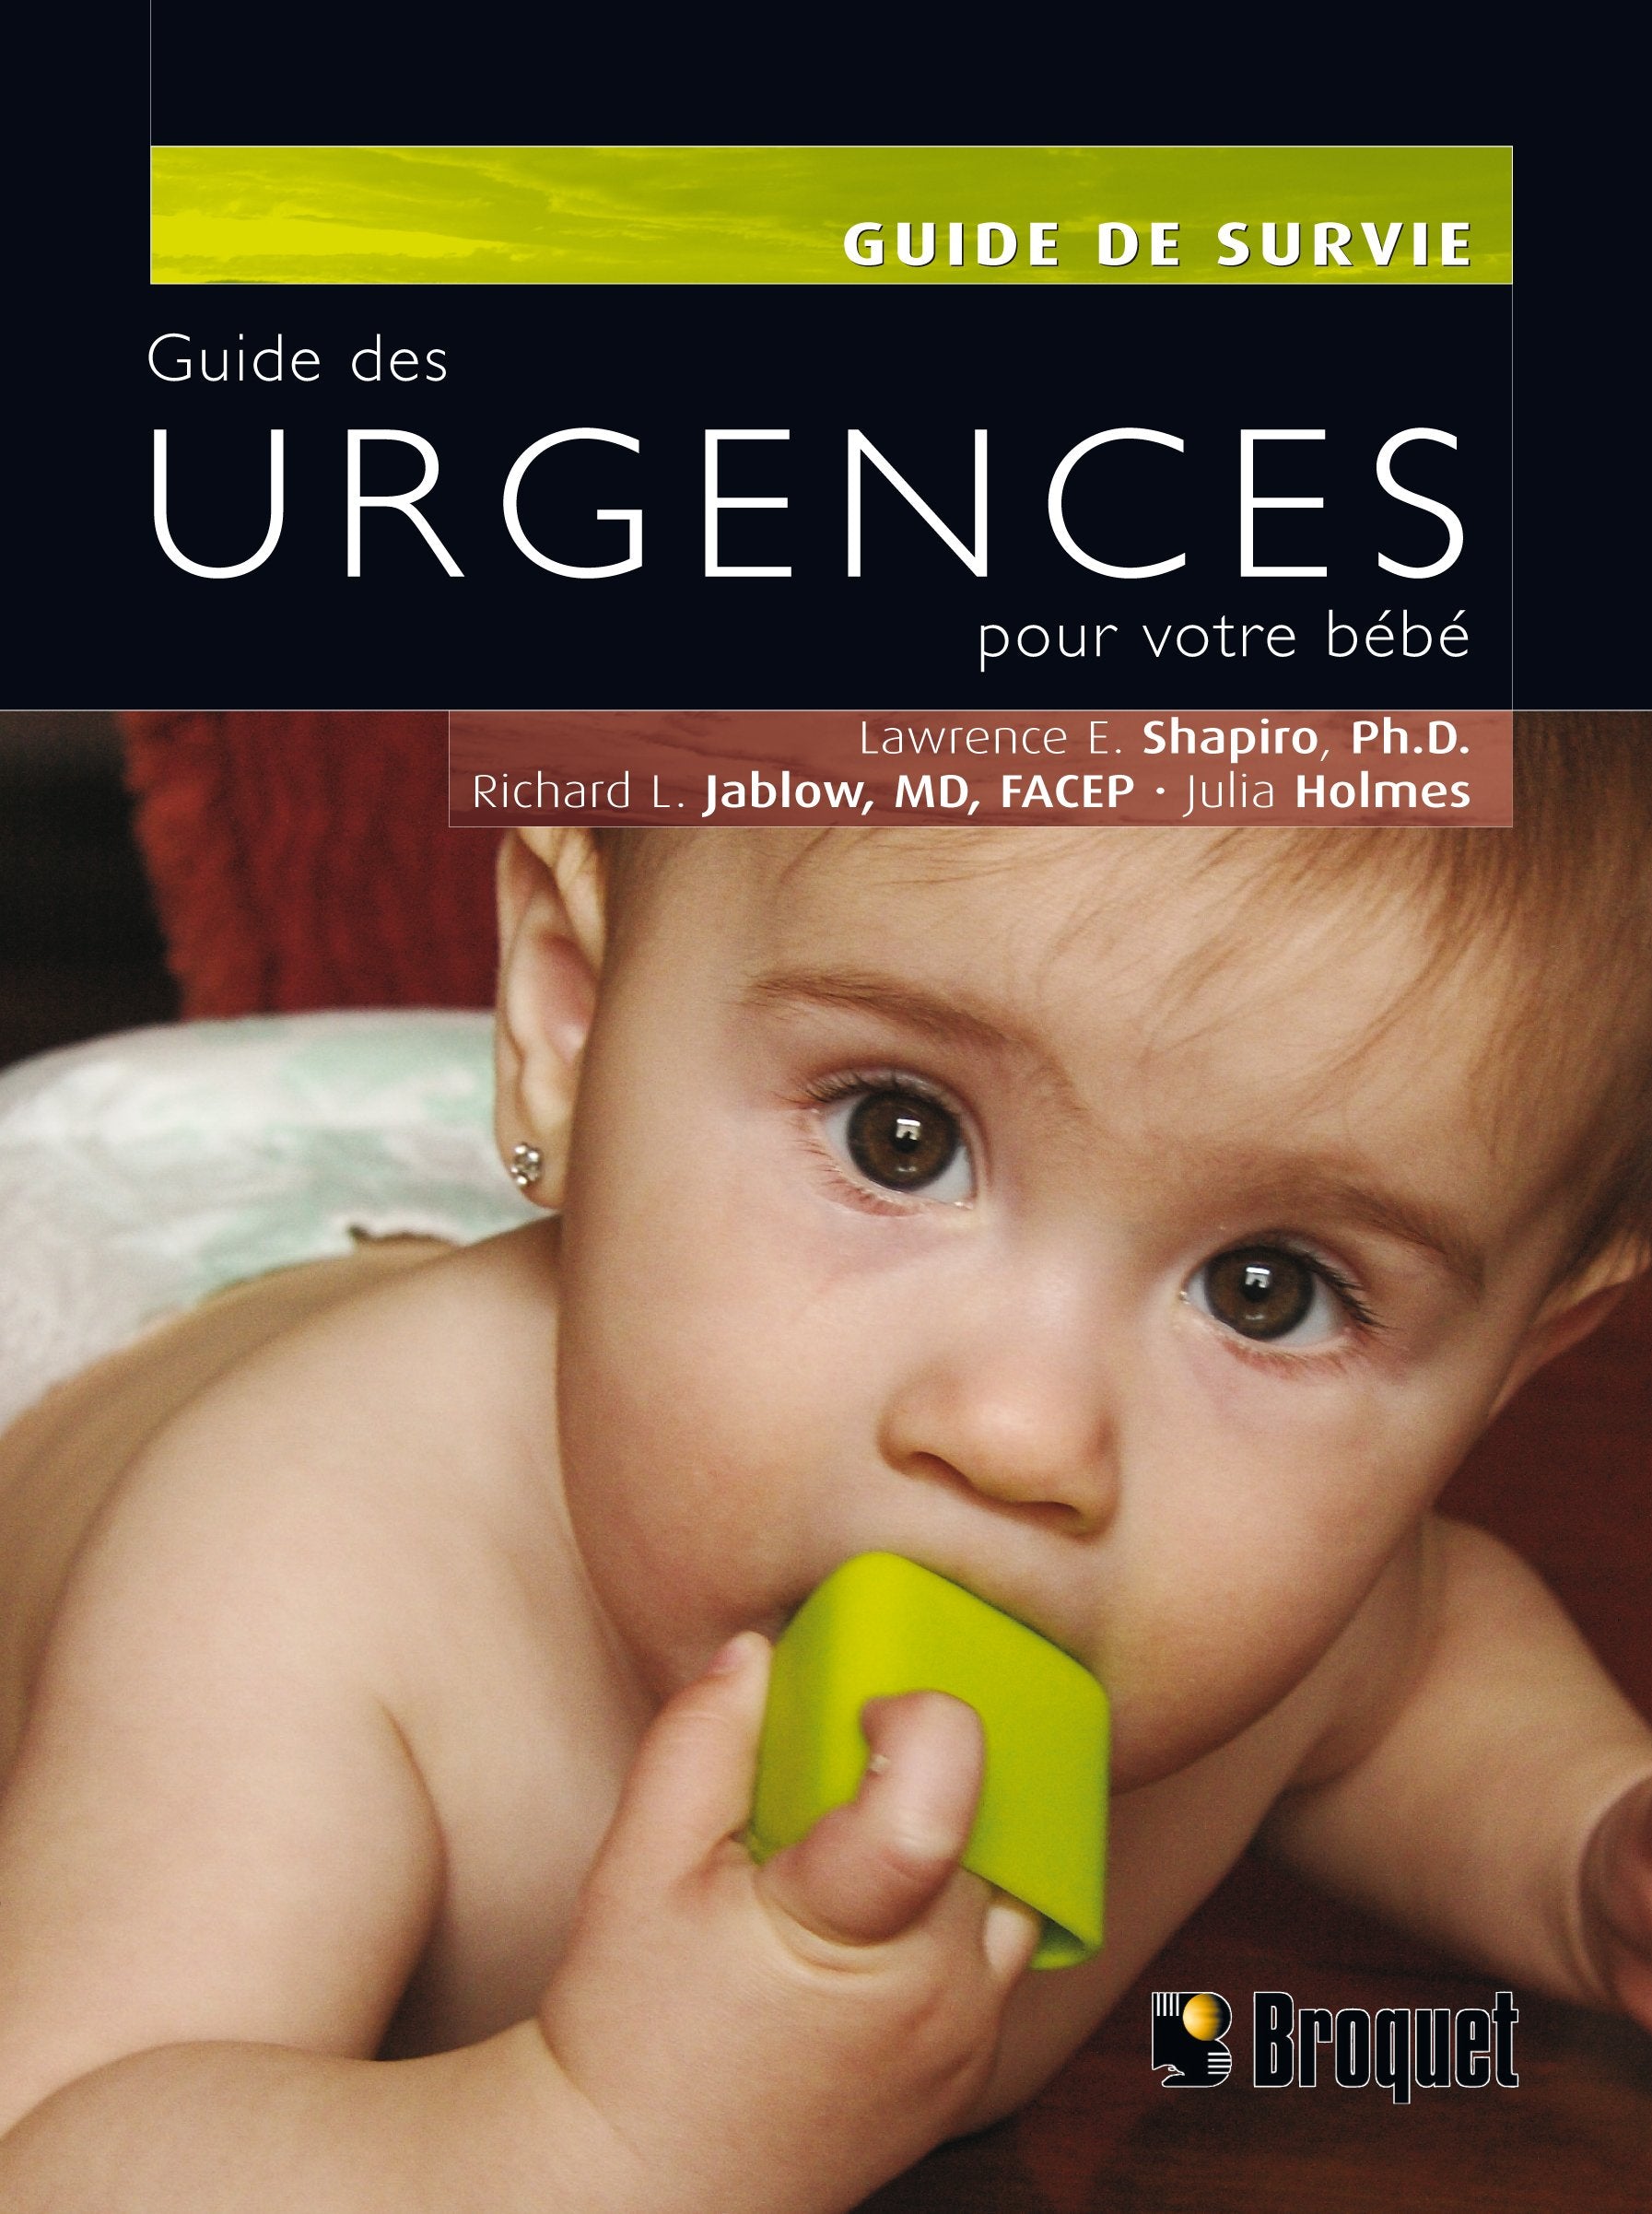 Livre ISBN 2896541225 Guide de survie : Guide des urgences pour votre bébé (Lawrence E. Shapiro)